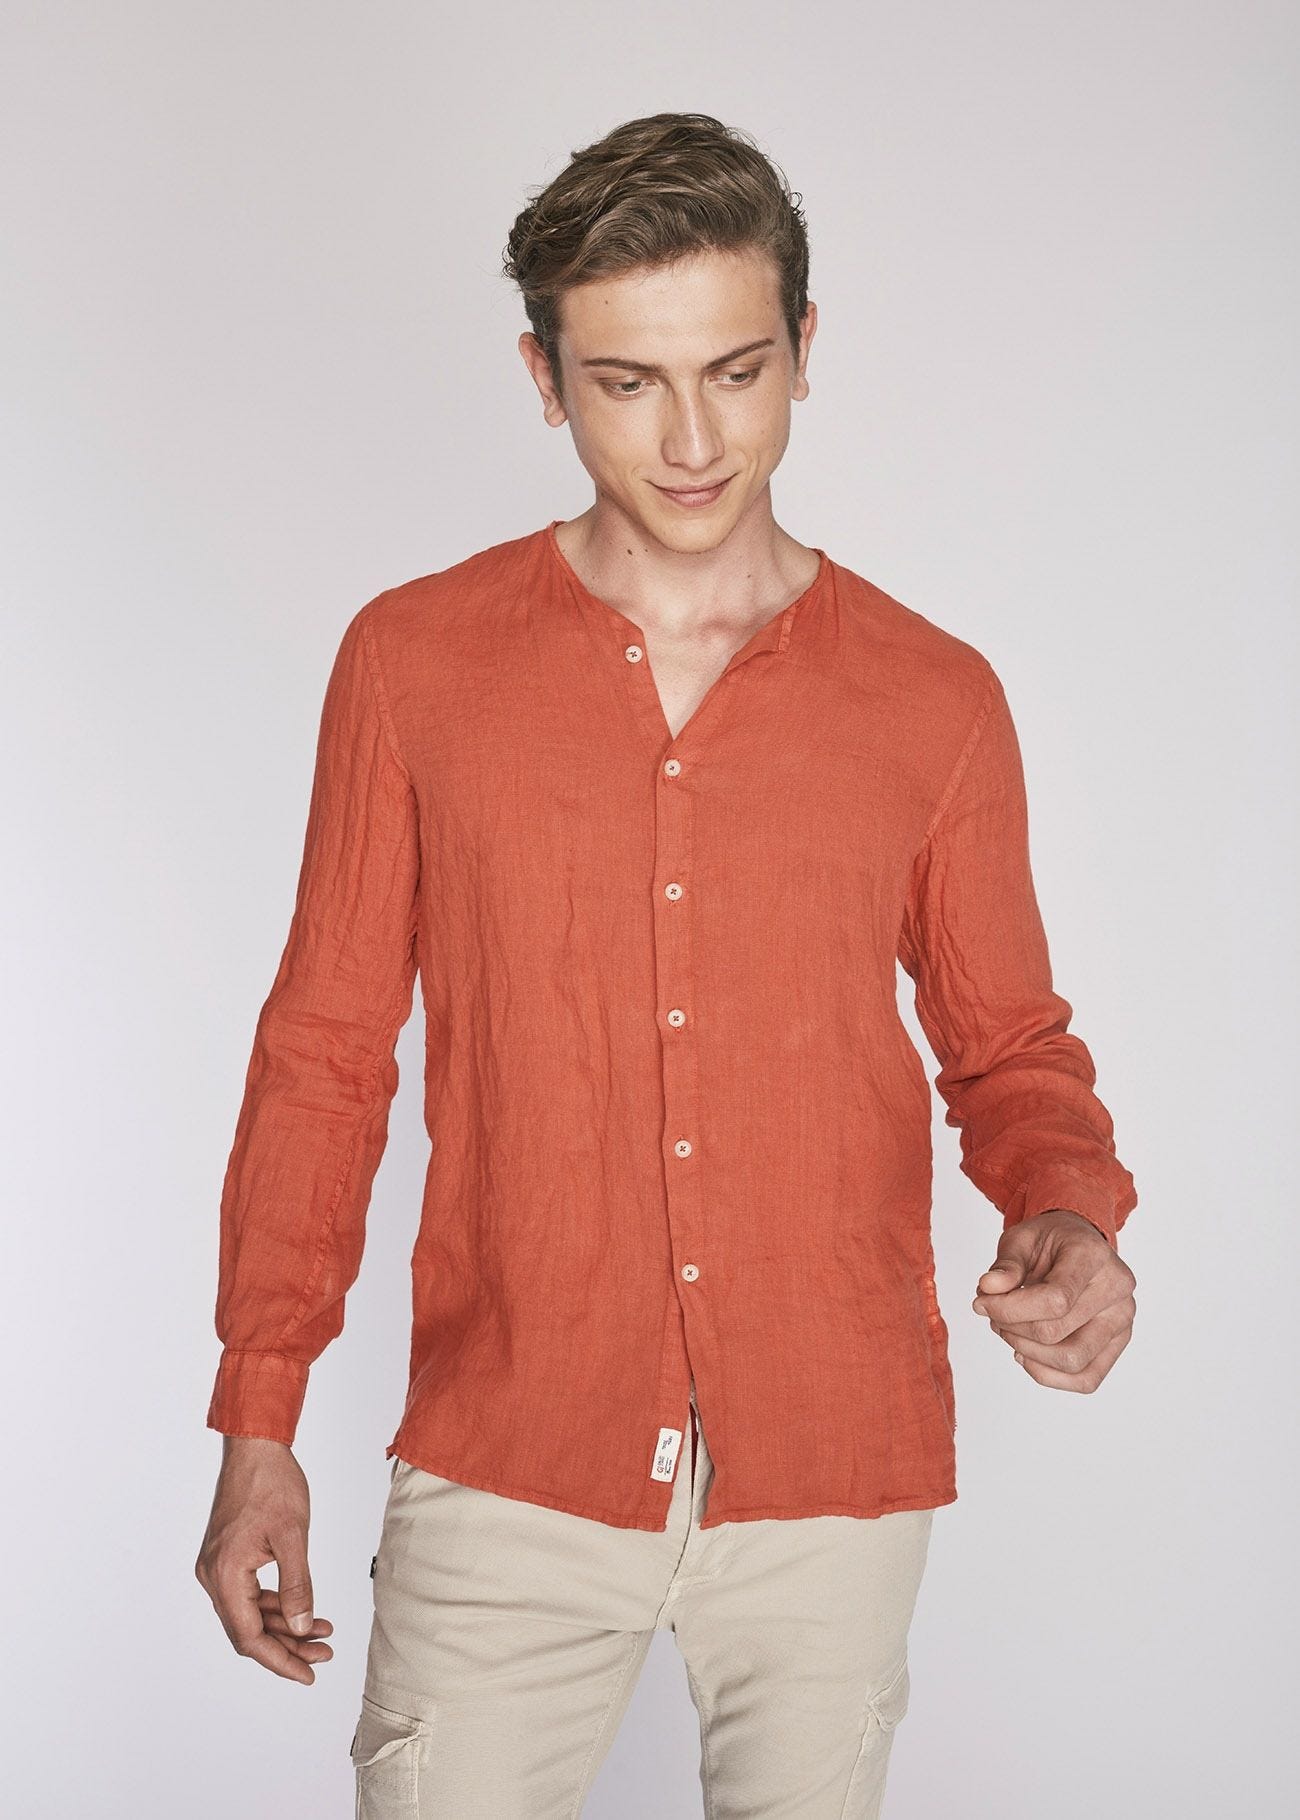 Linen shirt with sharp cut collar